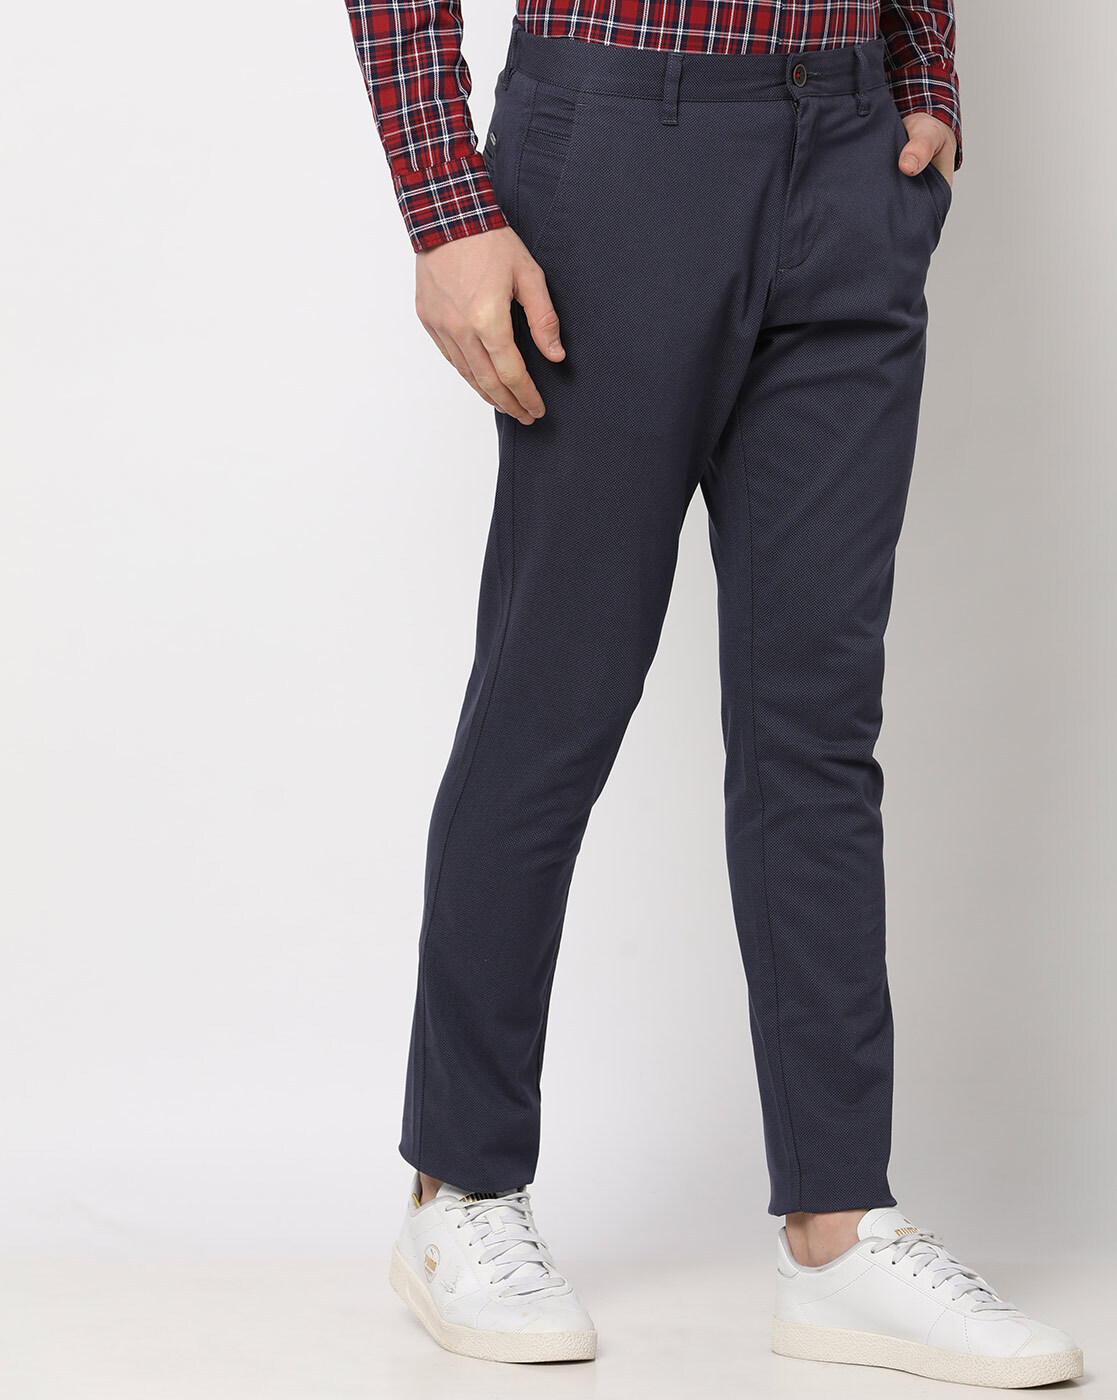 FRAME Women's Le Tomboy Trousers Size 28 | eBay